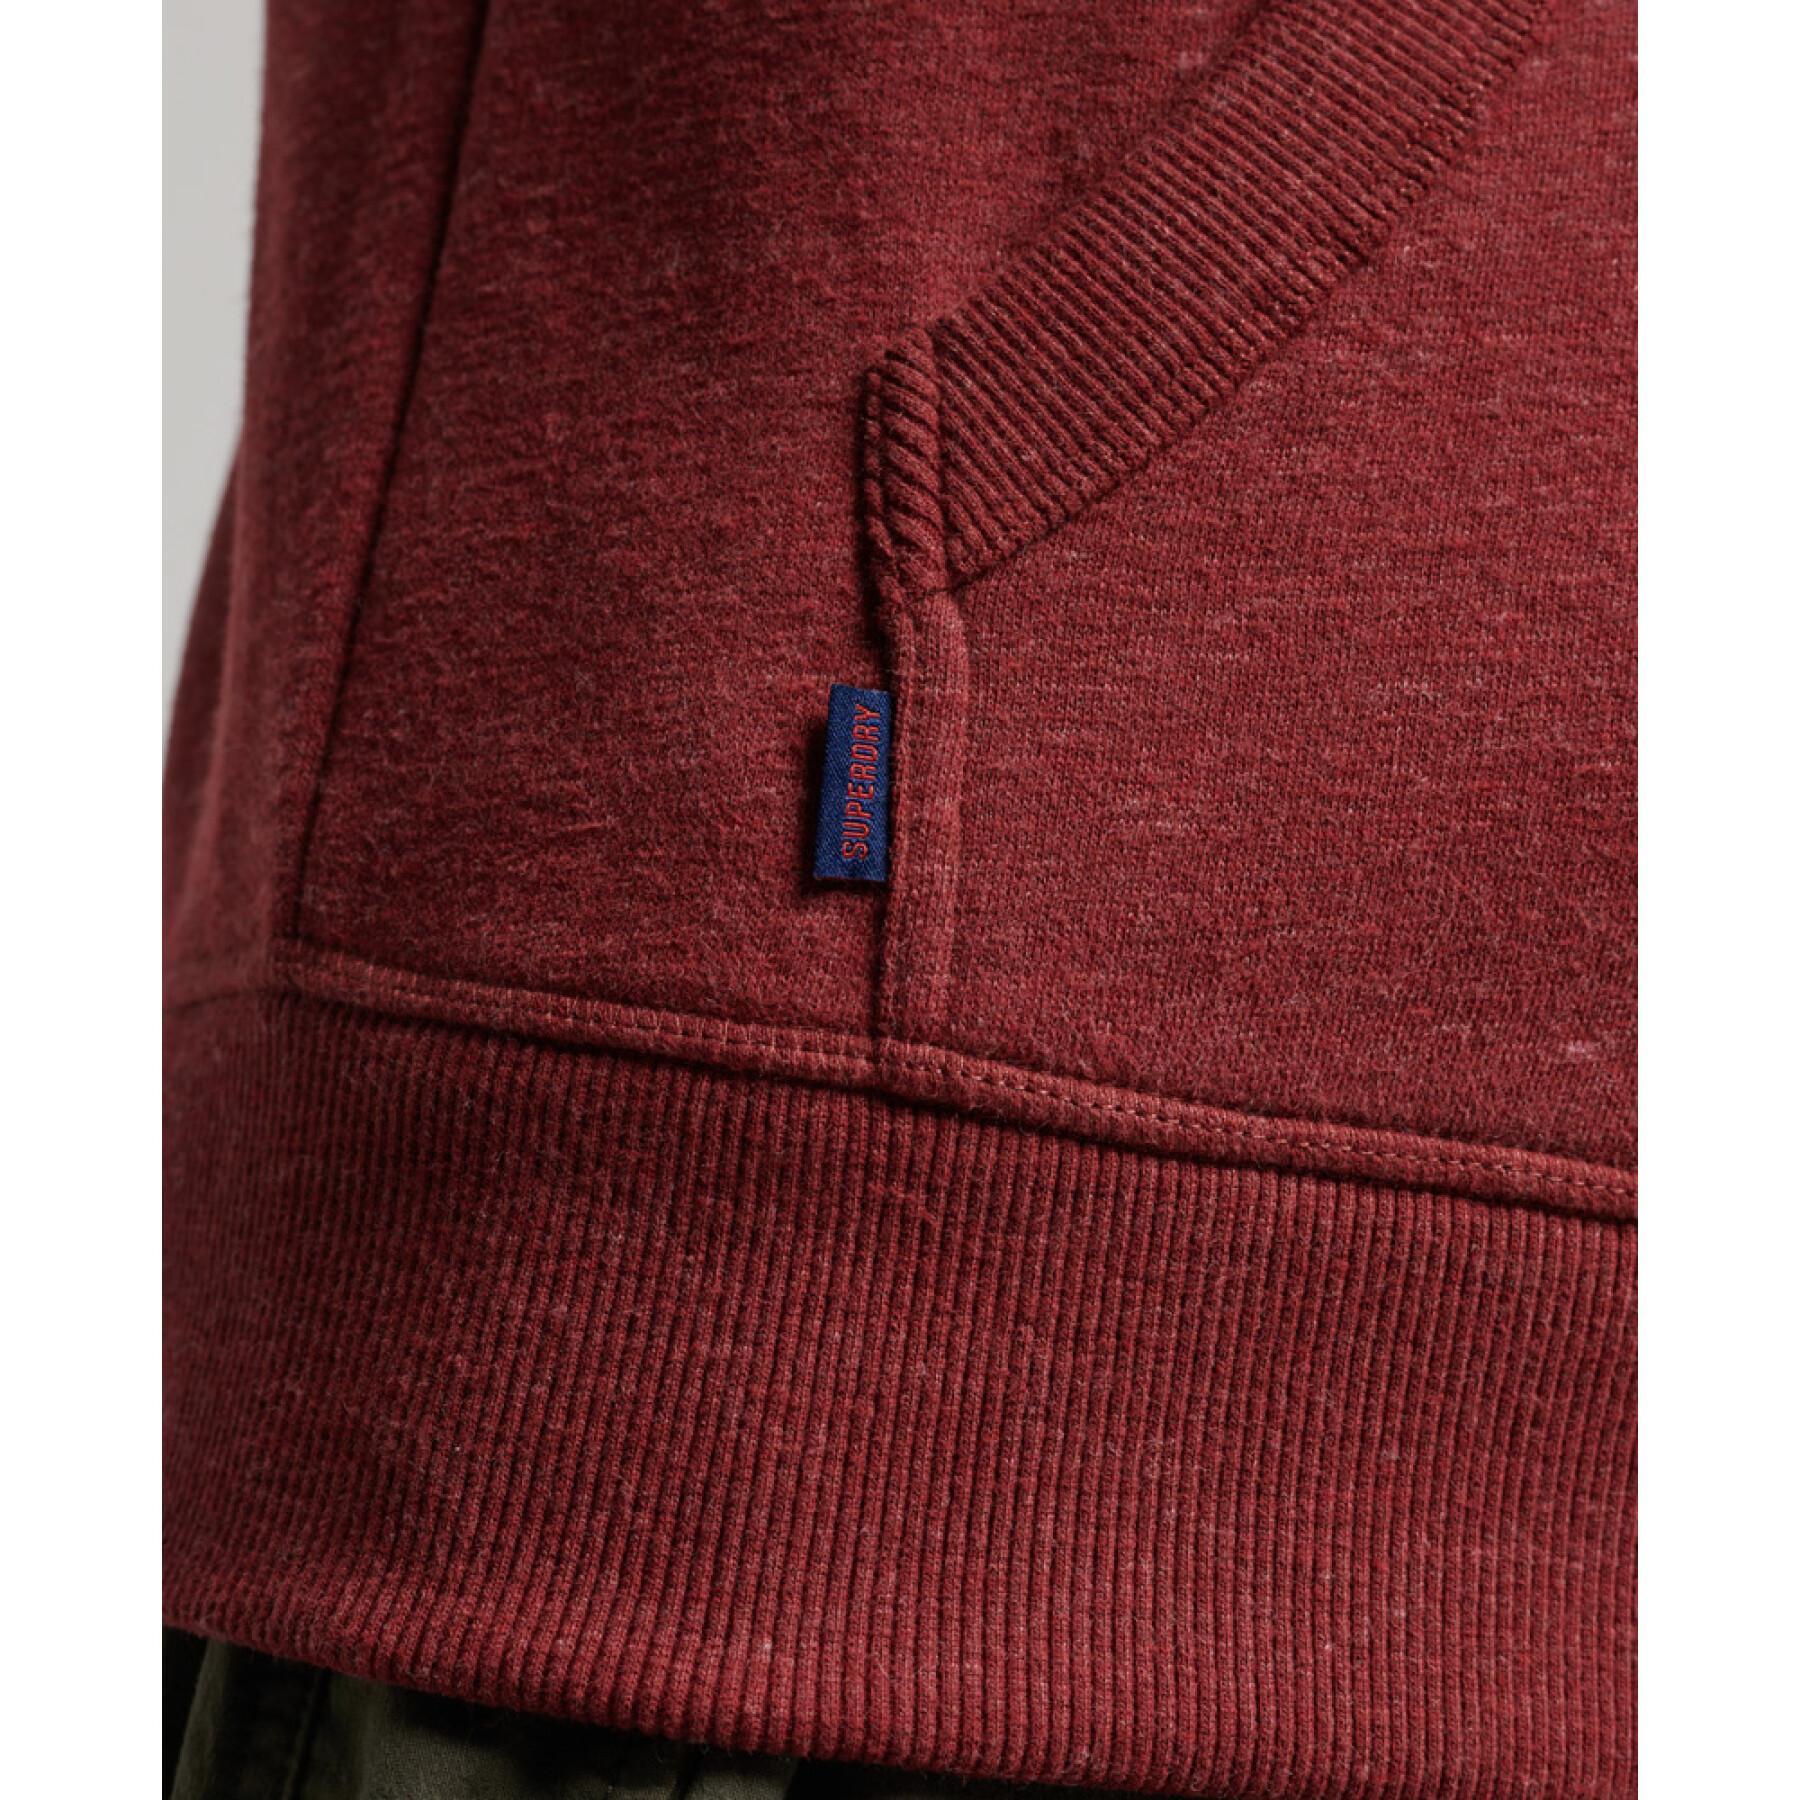 Sweatshirt capucha con cremallera y bordado Superdry Vintage Logo